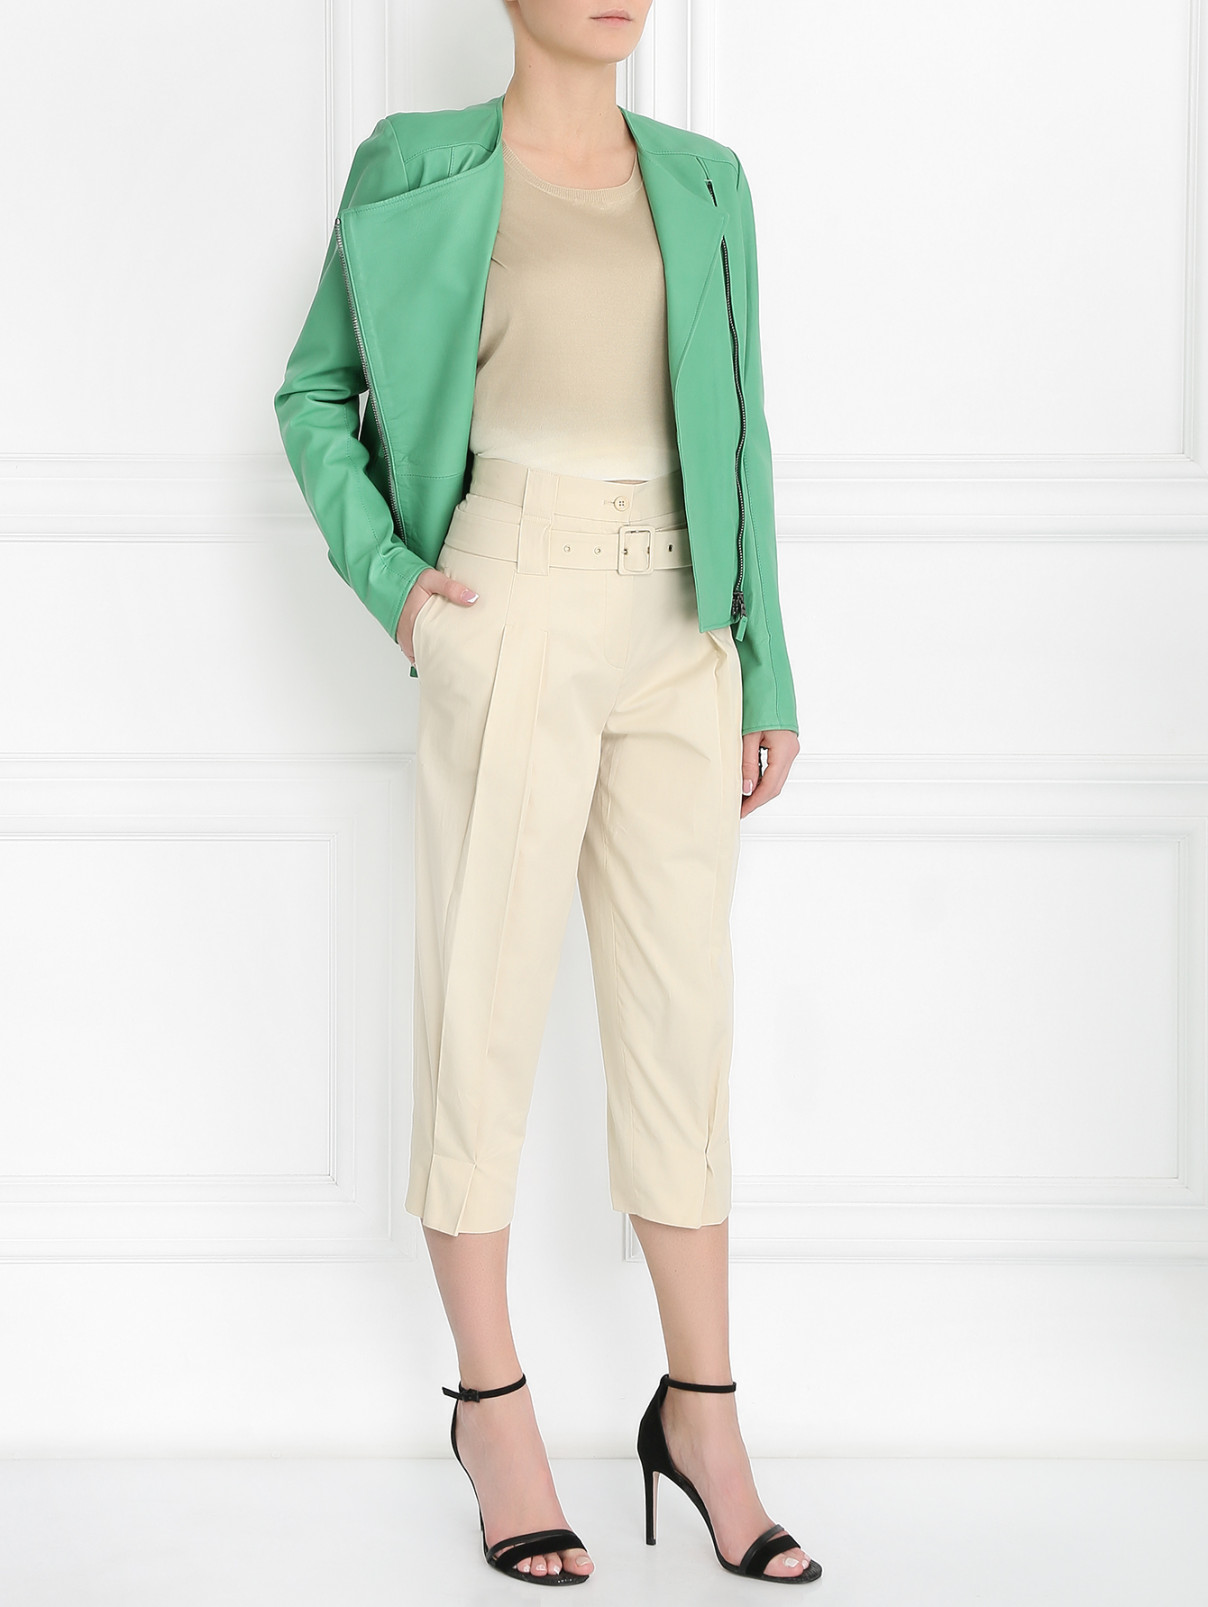 Куртка из кожи с косой застежкой-молнией Etro  –  Модель Общий вид  – Цвет:  Зеленый